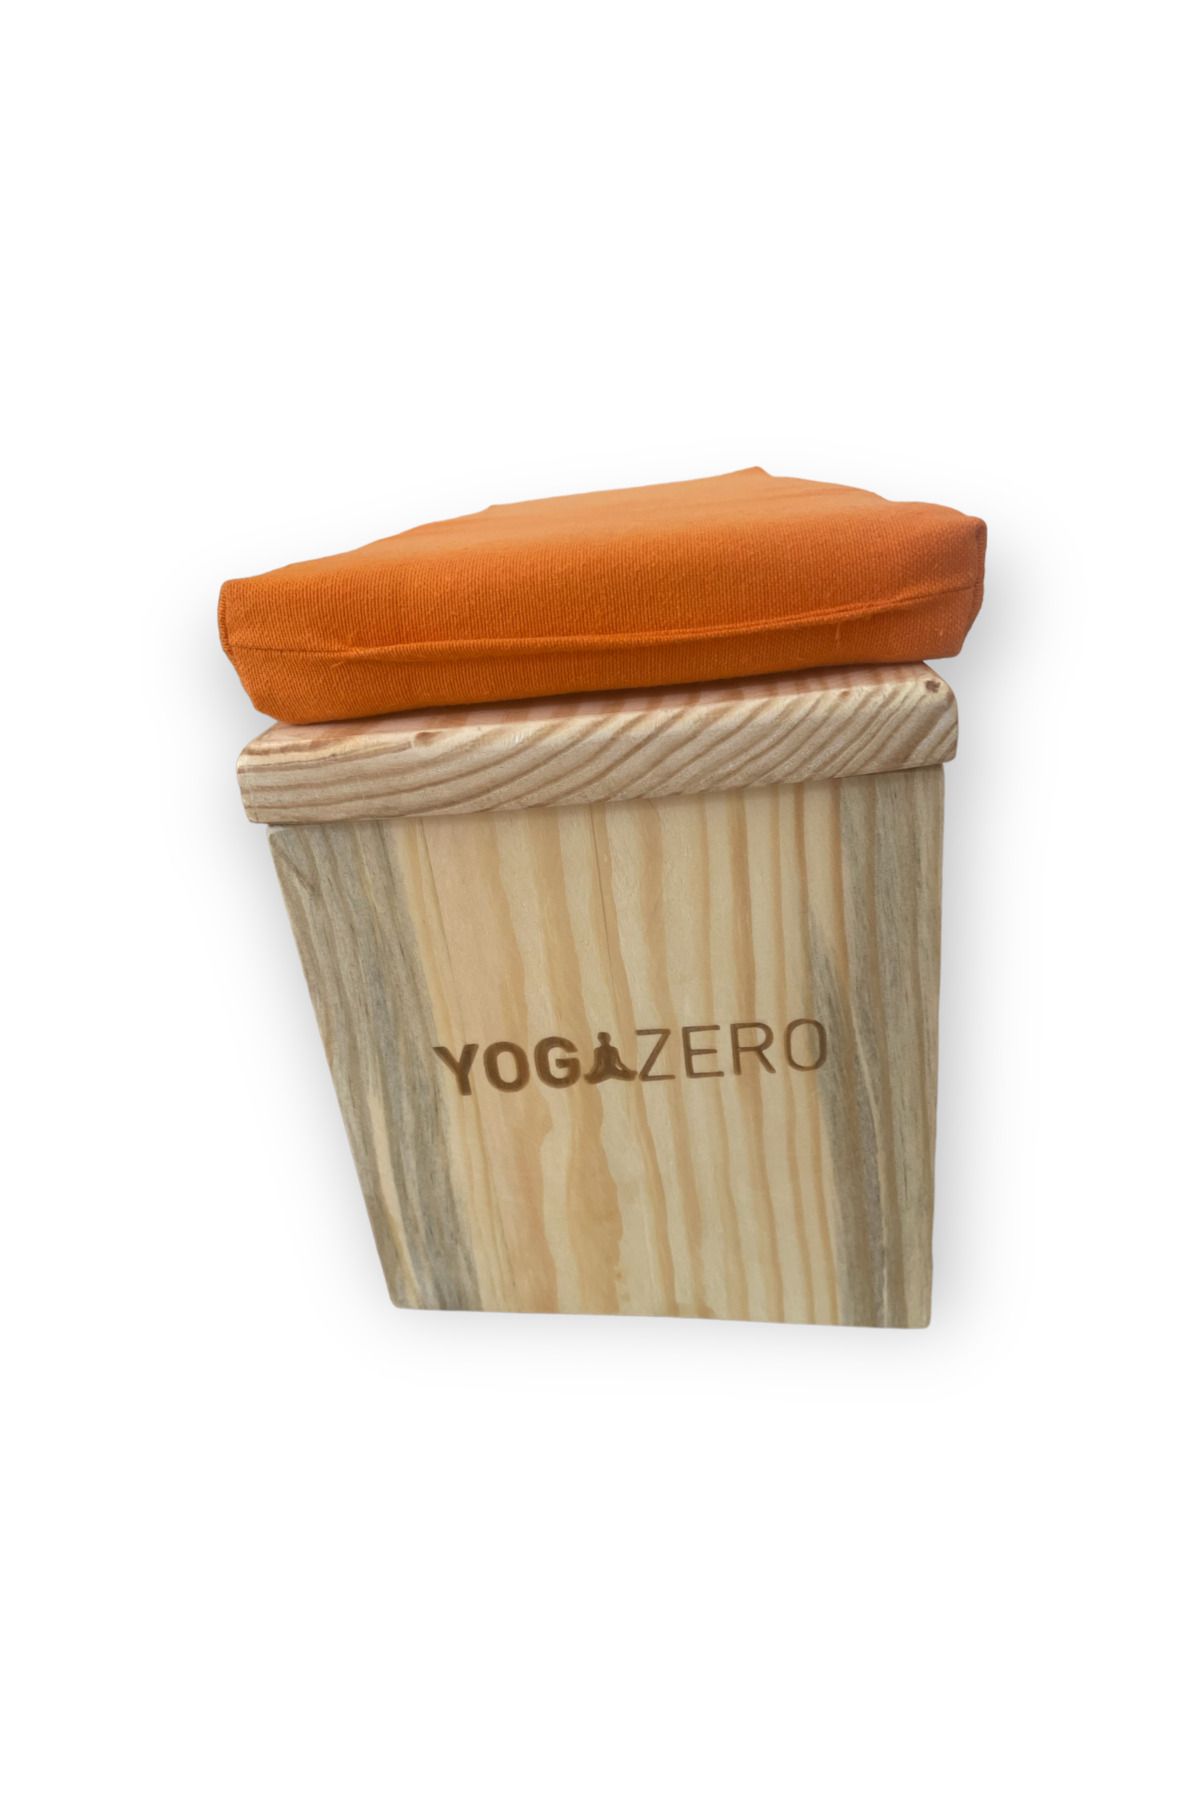 Yoga Zero Meditasyon taburesi - Çanta hediyeli